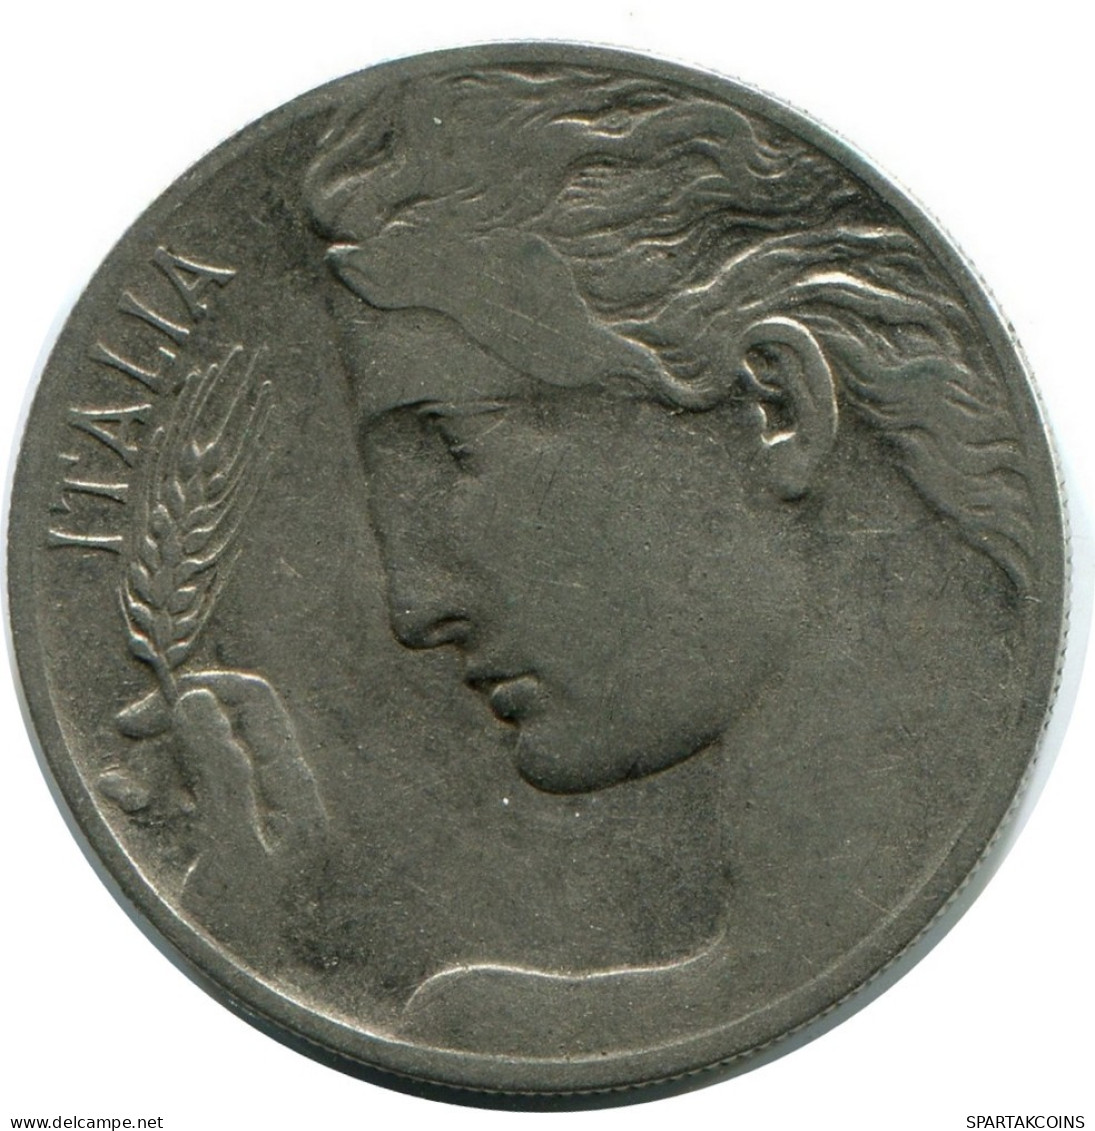 20 CENTESIMI 1908 ITALY Coin #AY263.2.U.A - 1900-1946 : Víctor Emmanuel III & Umberto II